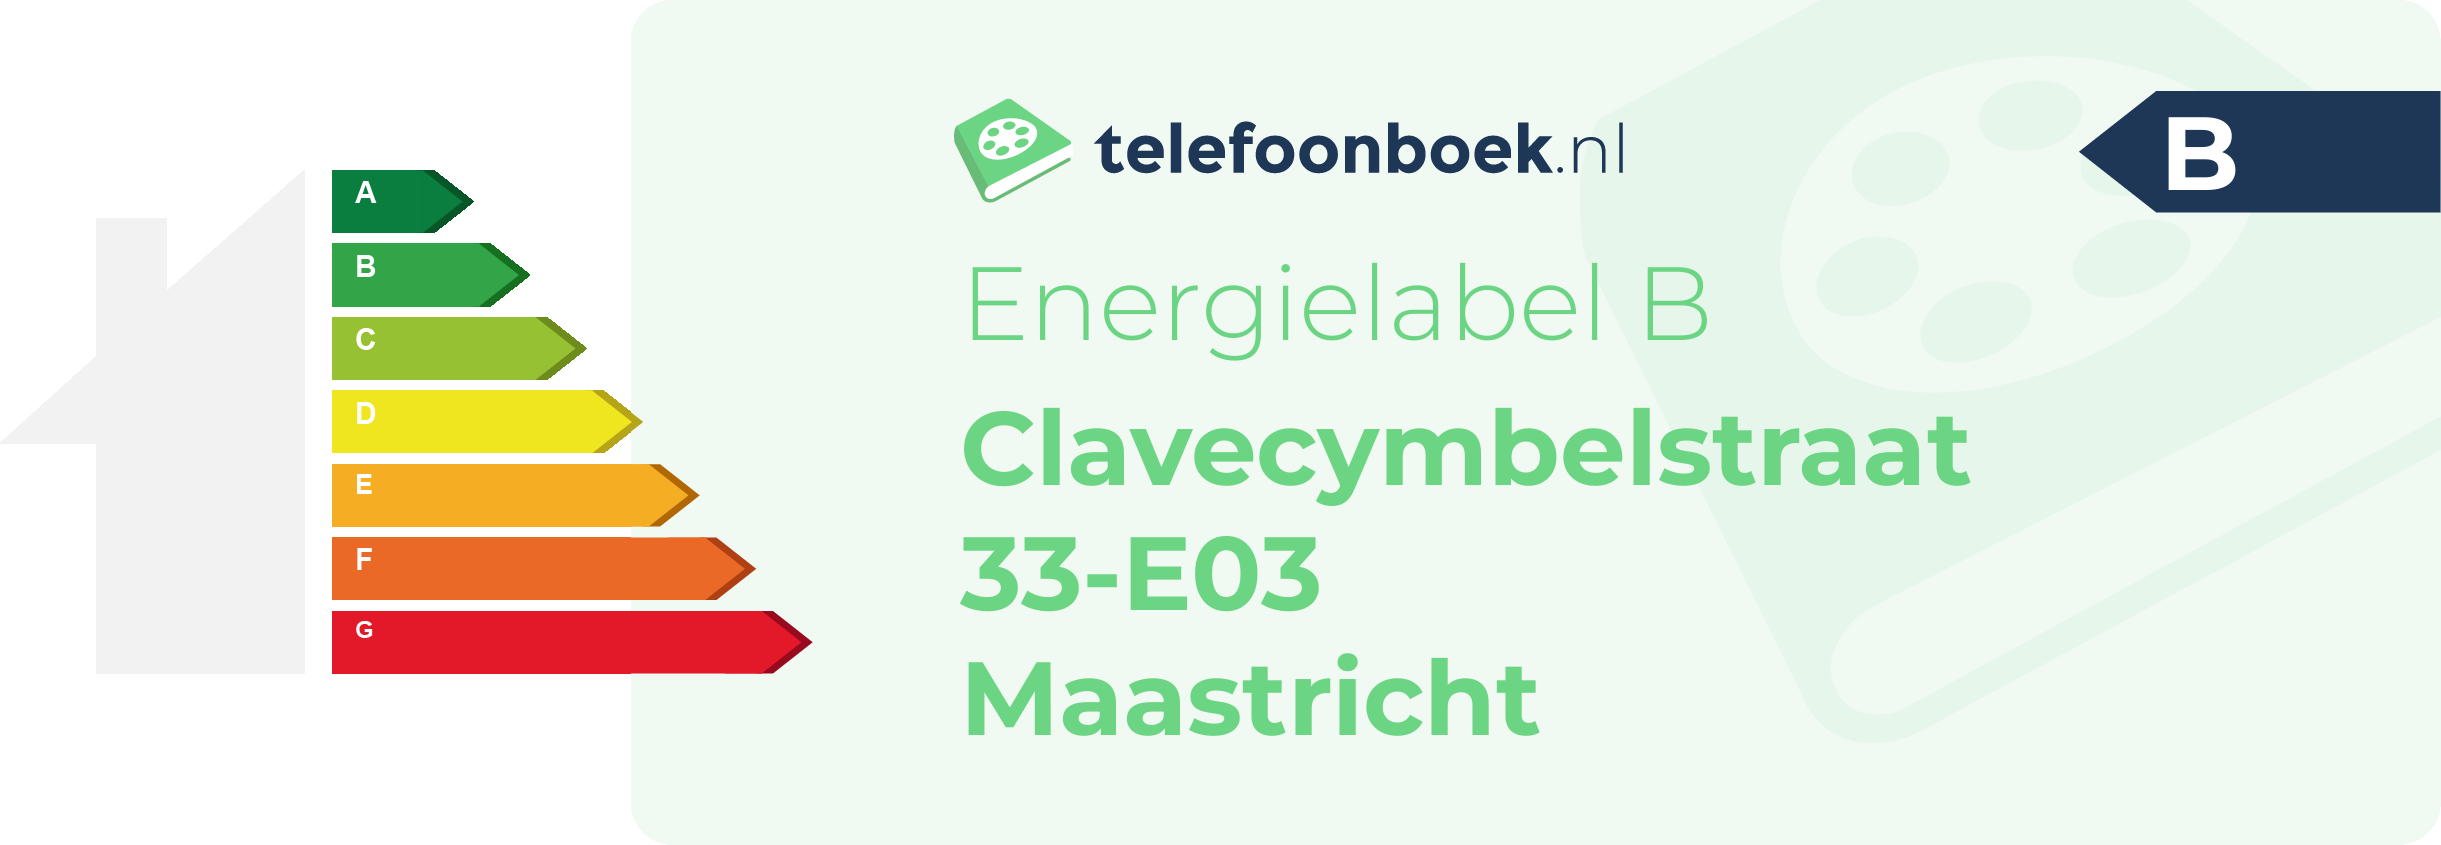 Energielabel Clavecymbelstraat 33-E03 Maastricht